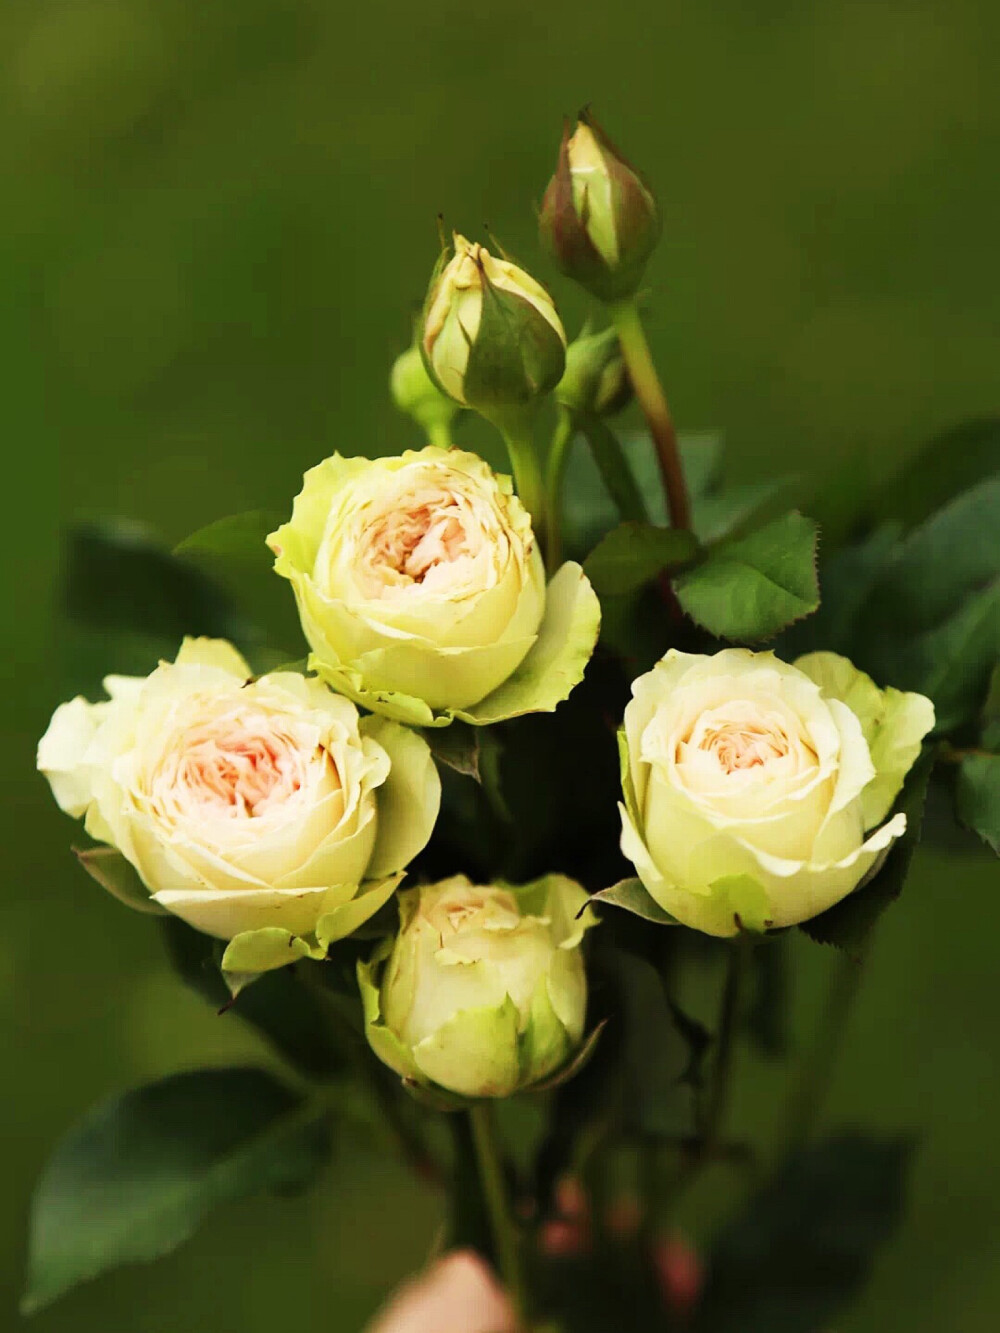 帕尔玛玫瑰：帕尔玛多头玫瑰，一个进口的新玫瑰品种，源自奥斯汀月季，即英国的大卫·奥斯汀(David C.H Austin)所培育的月季品种。